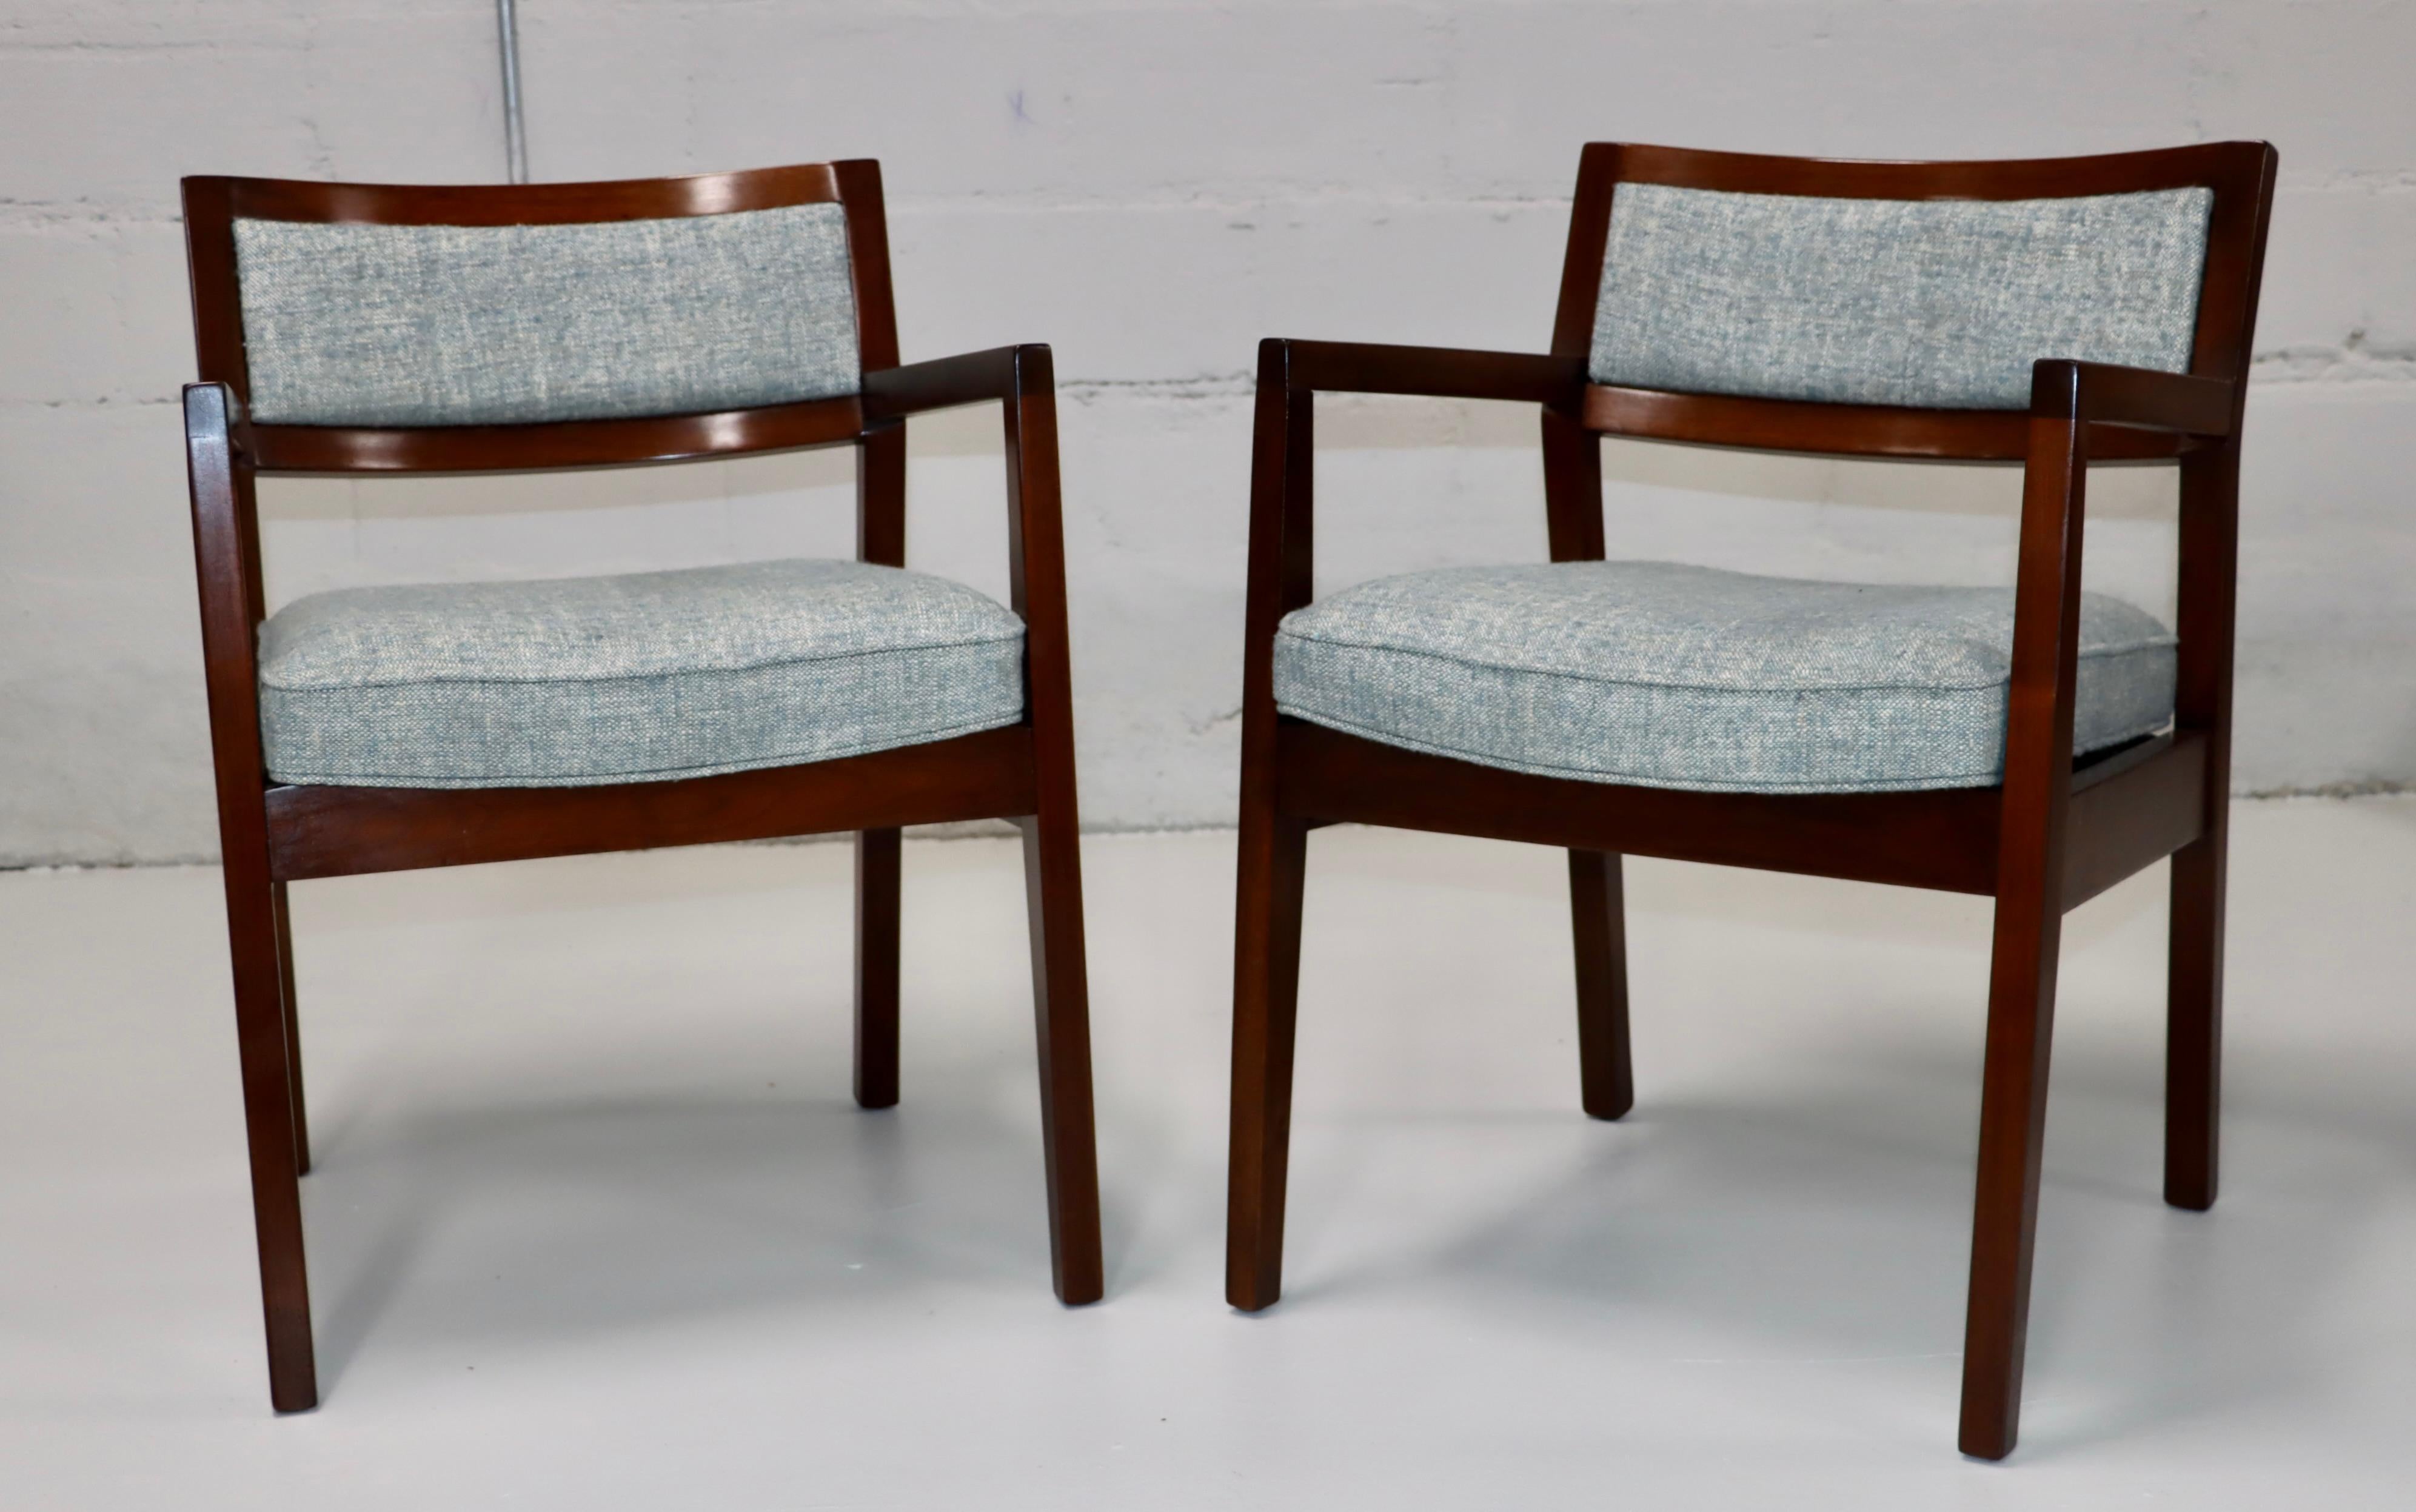 Moderne Sessel aus Nussbaum und Stoff im Stil von Jens Risom aus der Mitte des 19. Jahrhunderts, vollständig restauriert und neu gepolstert, mit leichten alters- und gebrauchsbedingten Gebrauchsspuren und Patina.